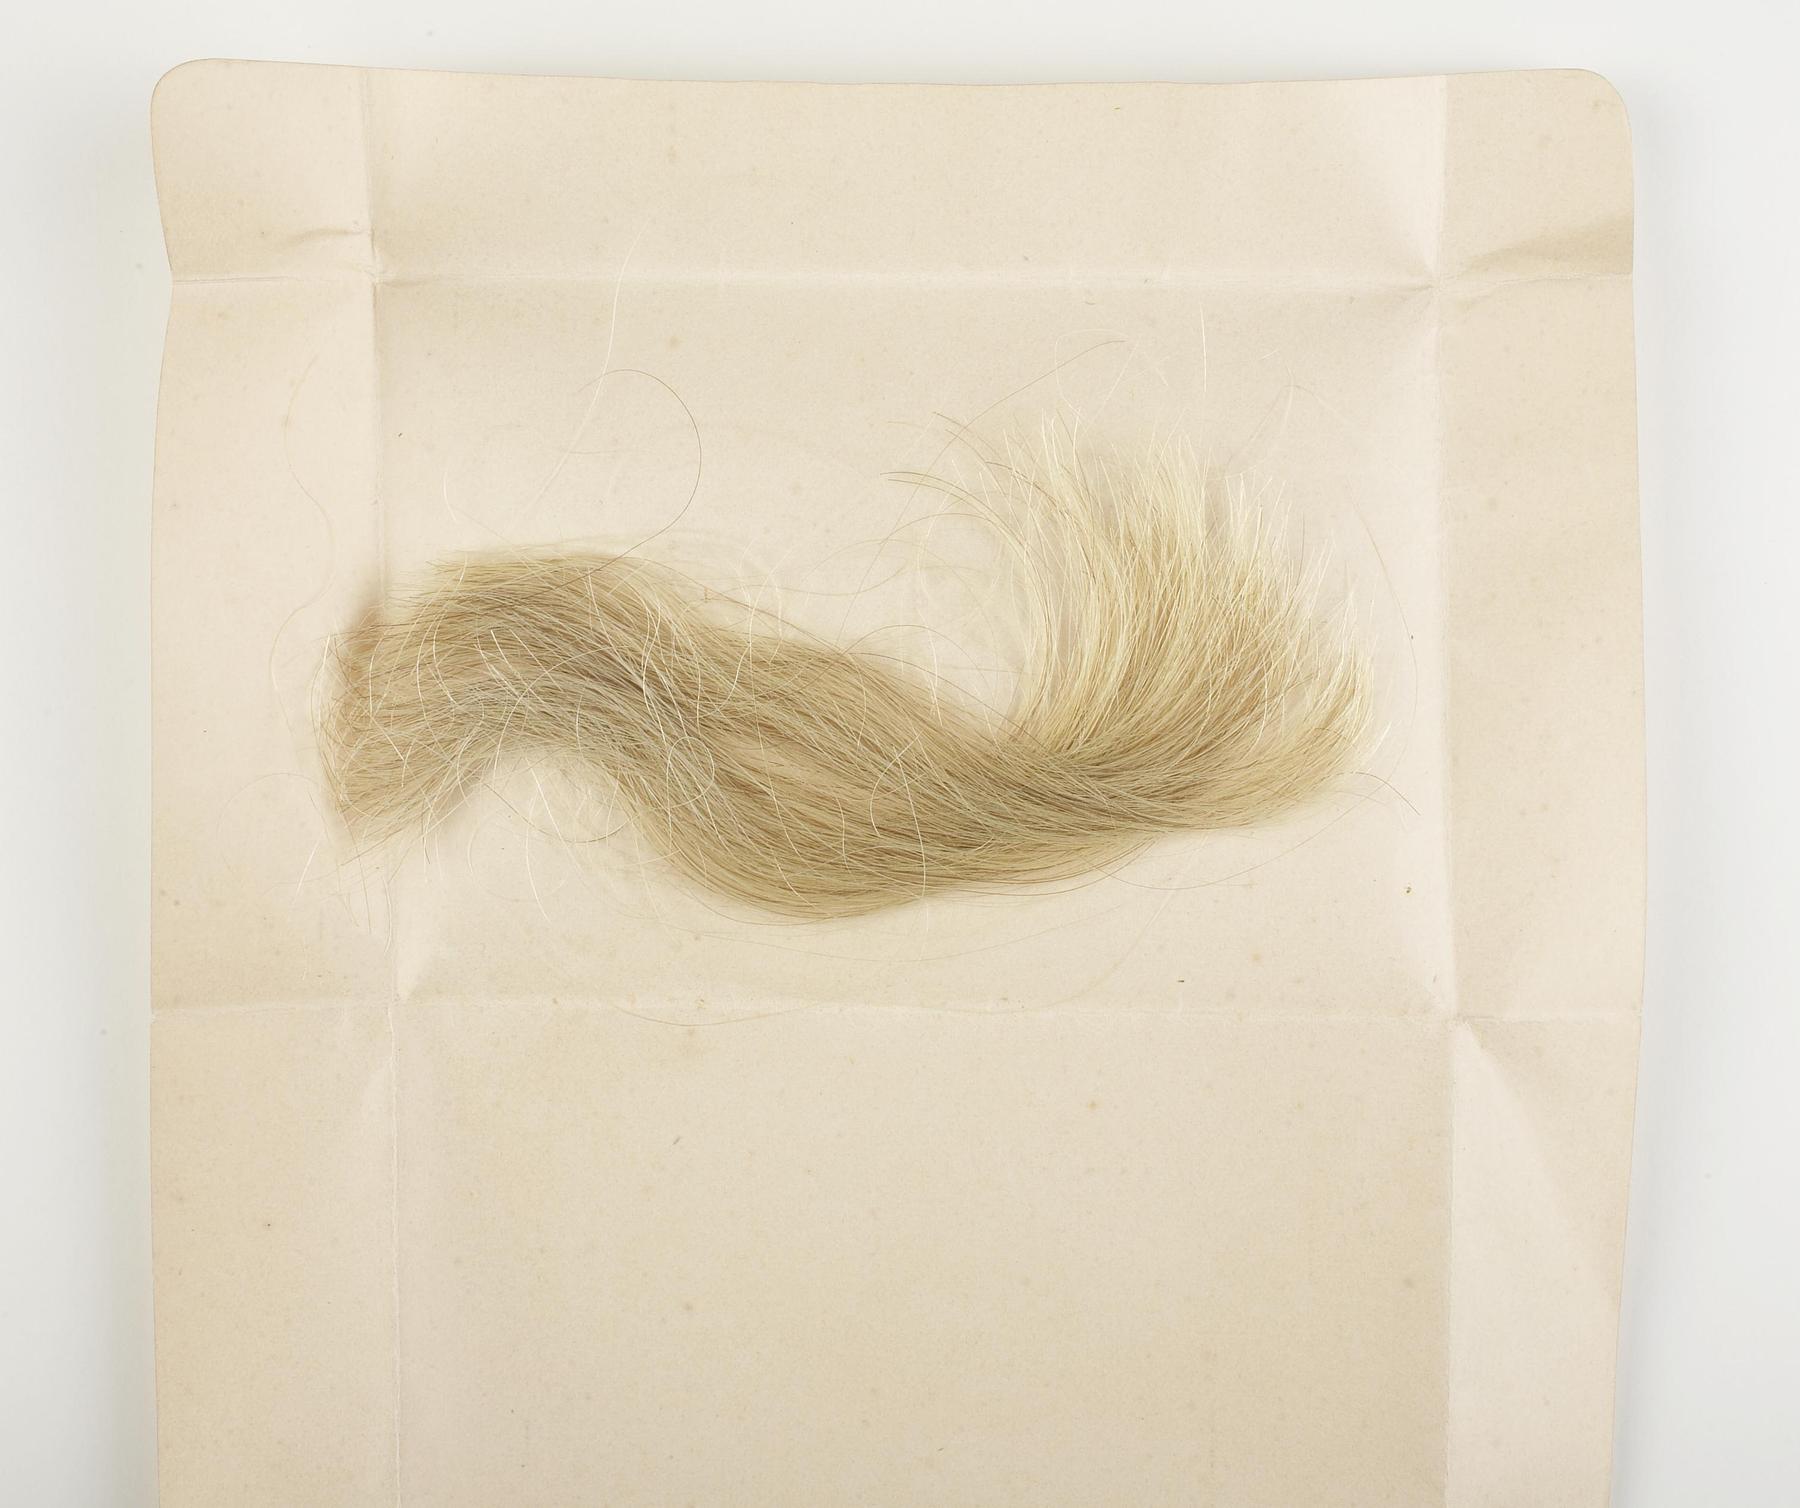 Lok af Thorvaldsens hår, N357